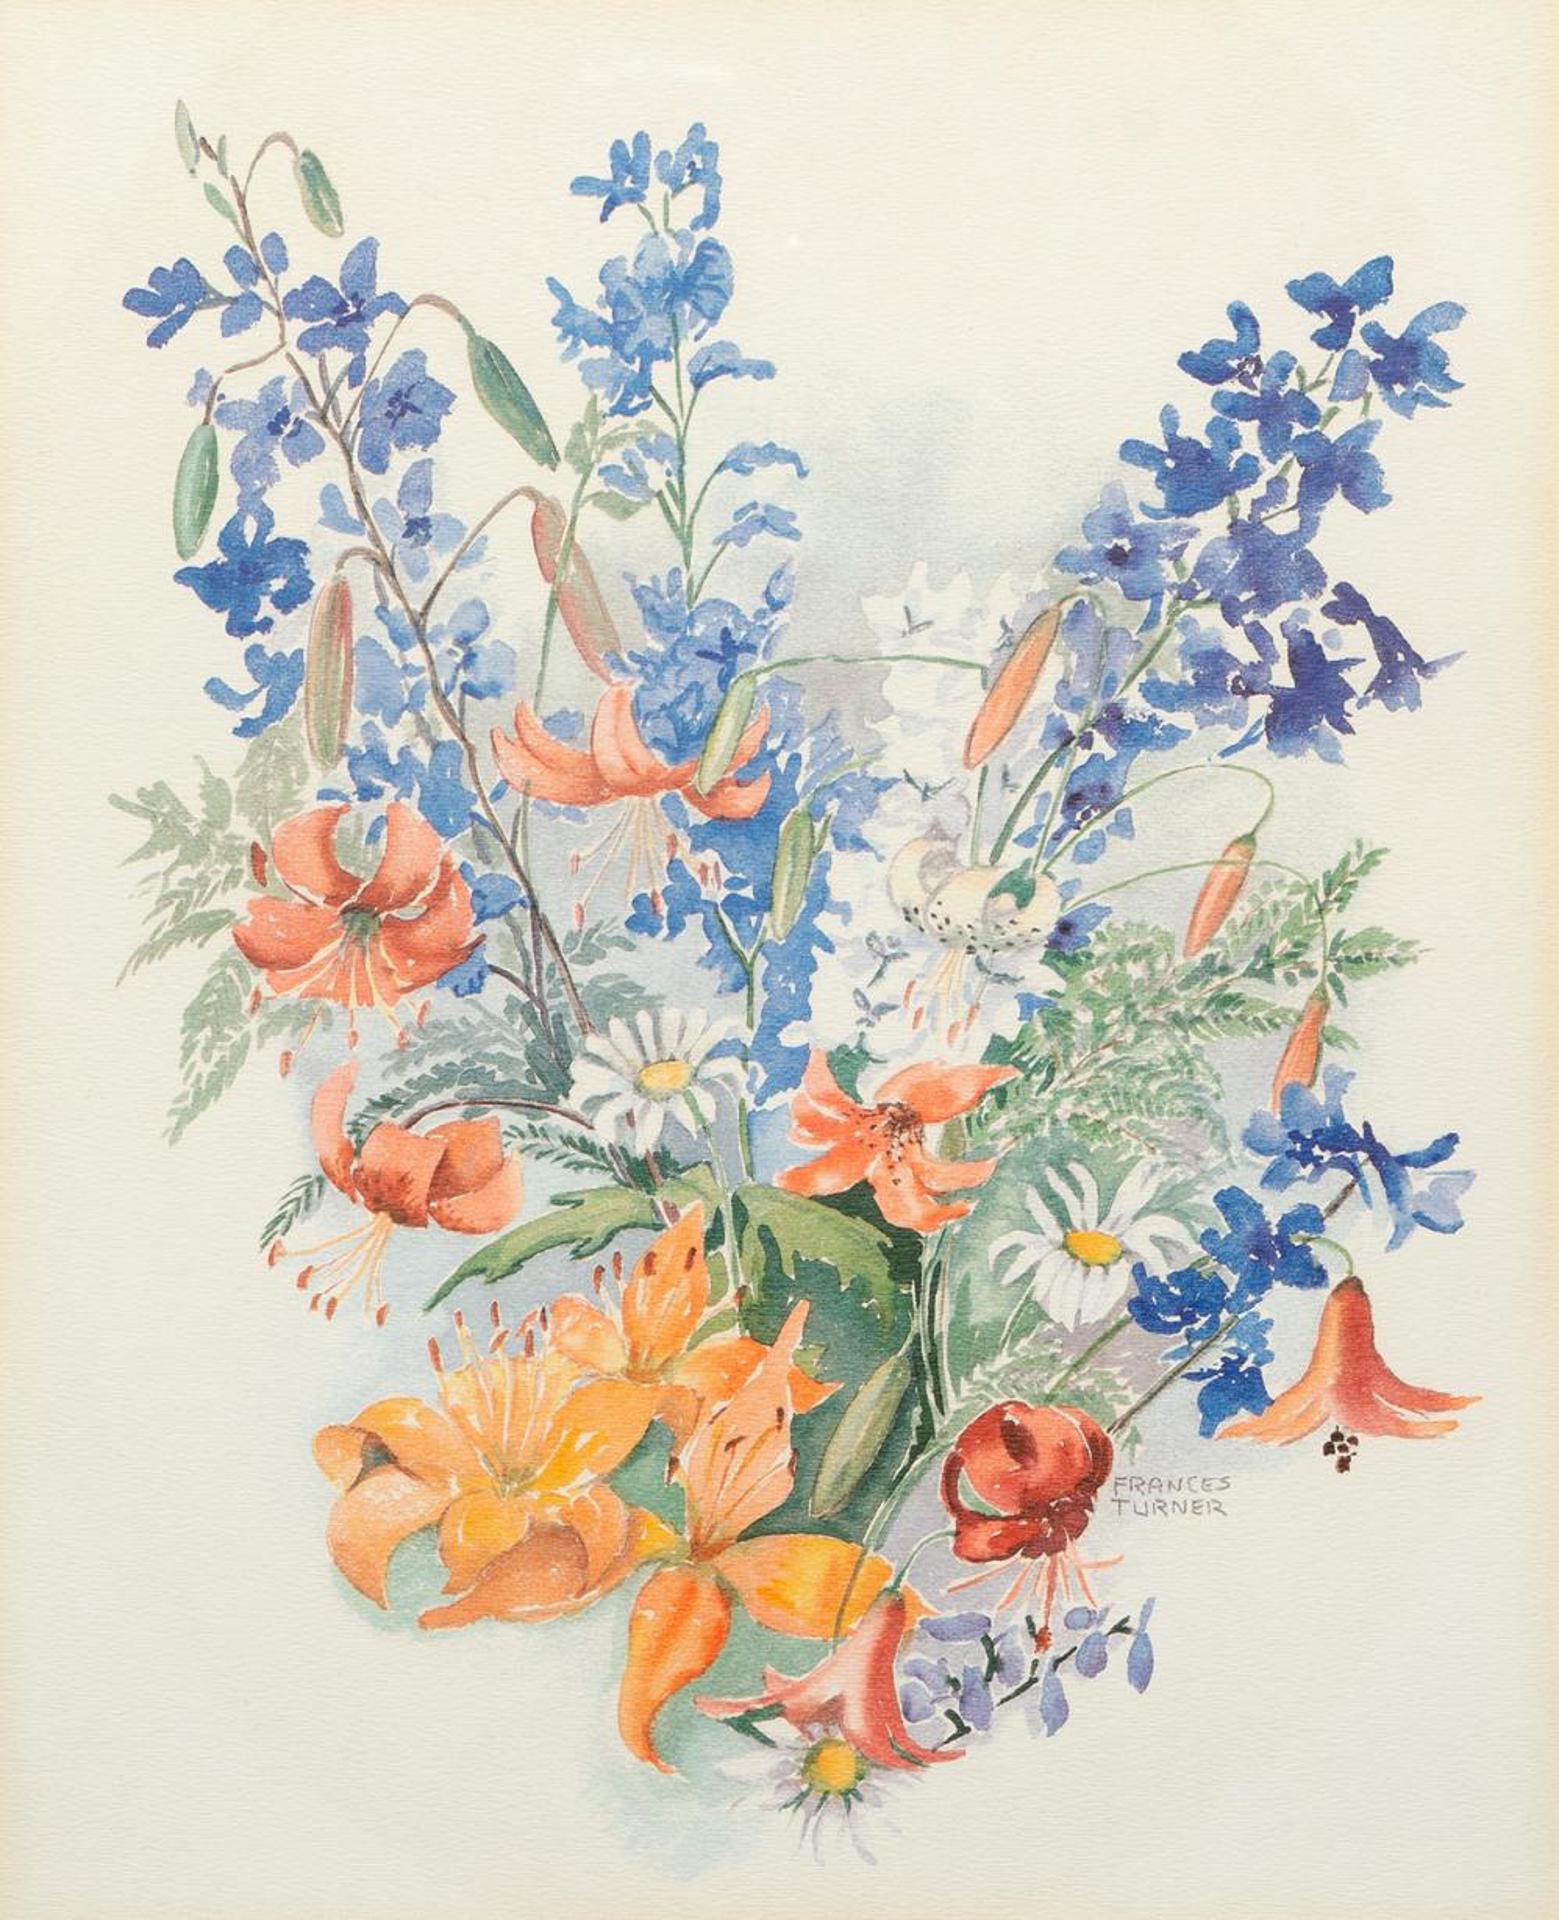 Frances Turner - Untitled - Bouquet